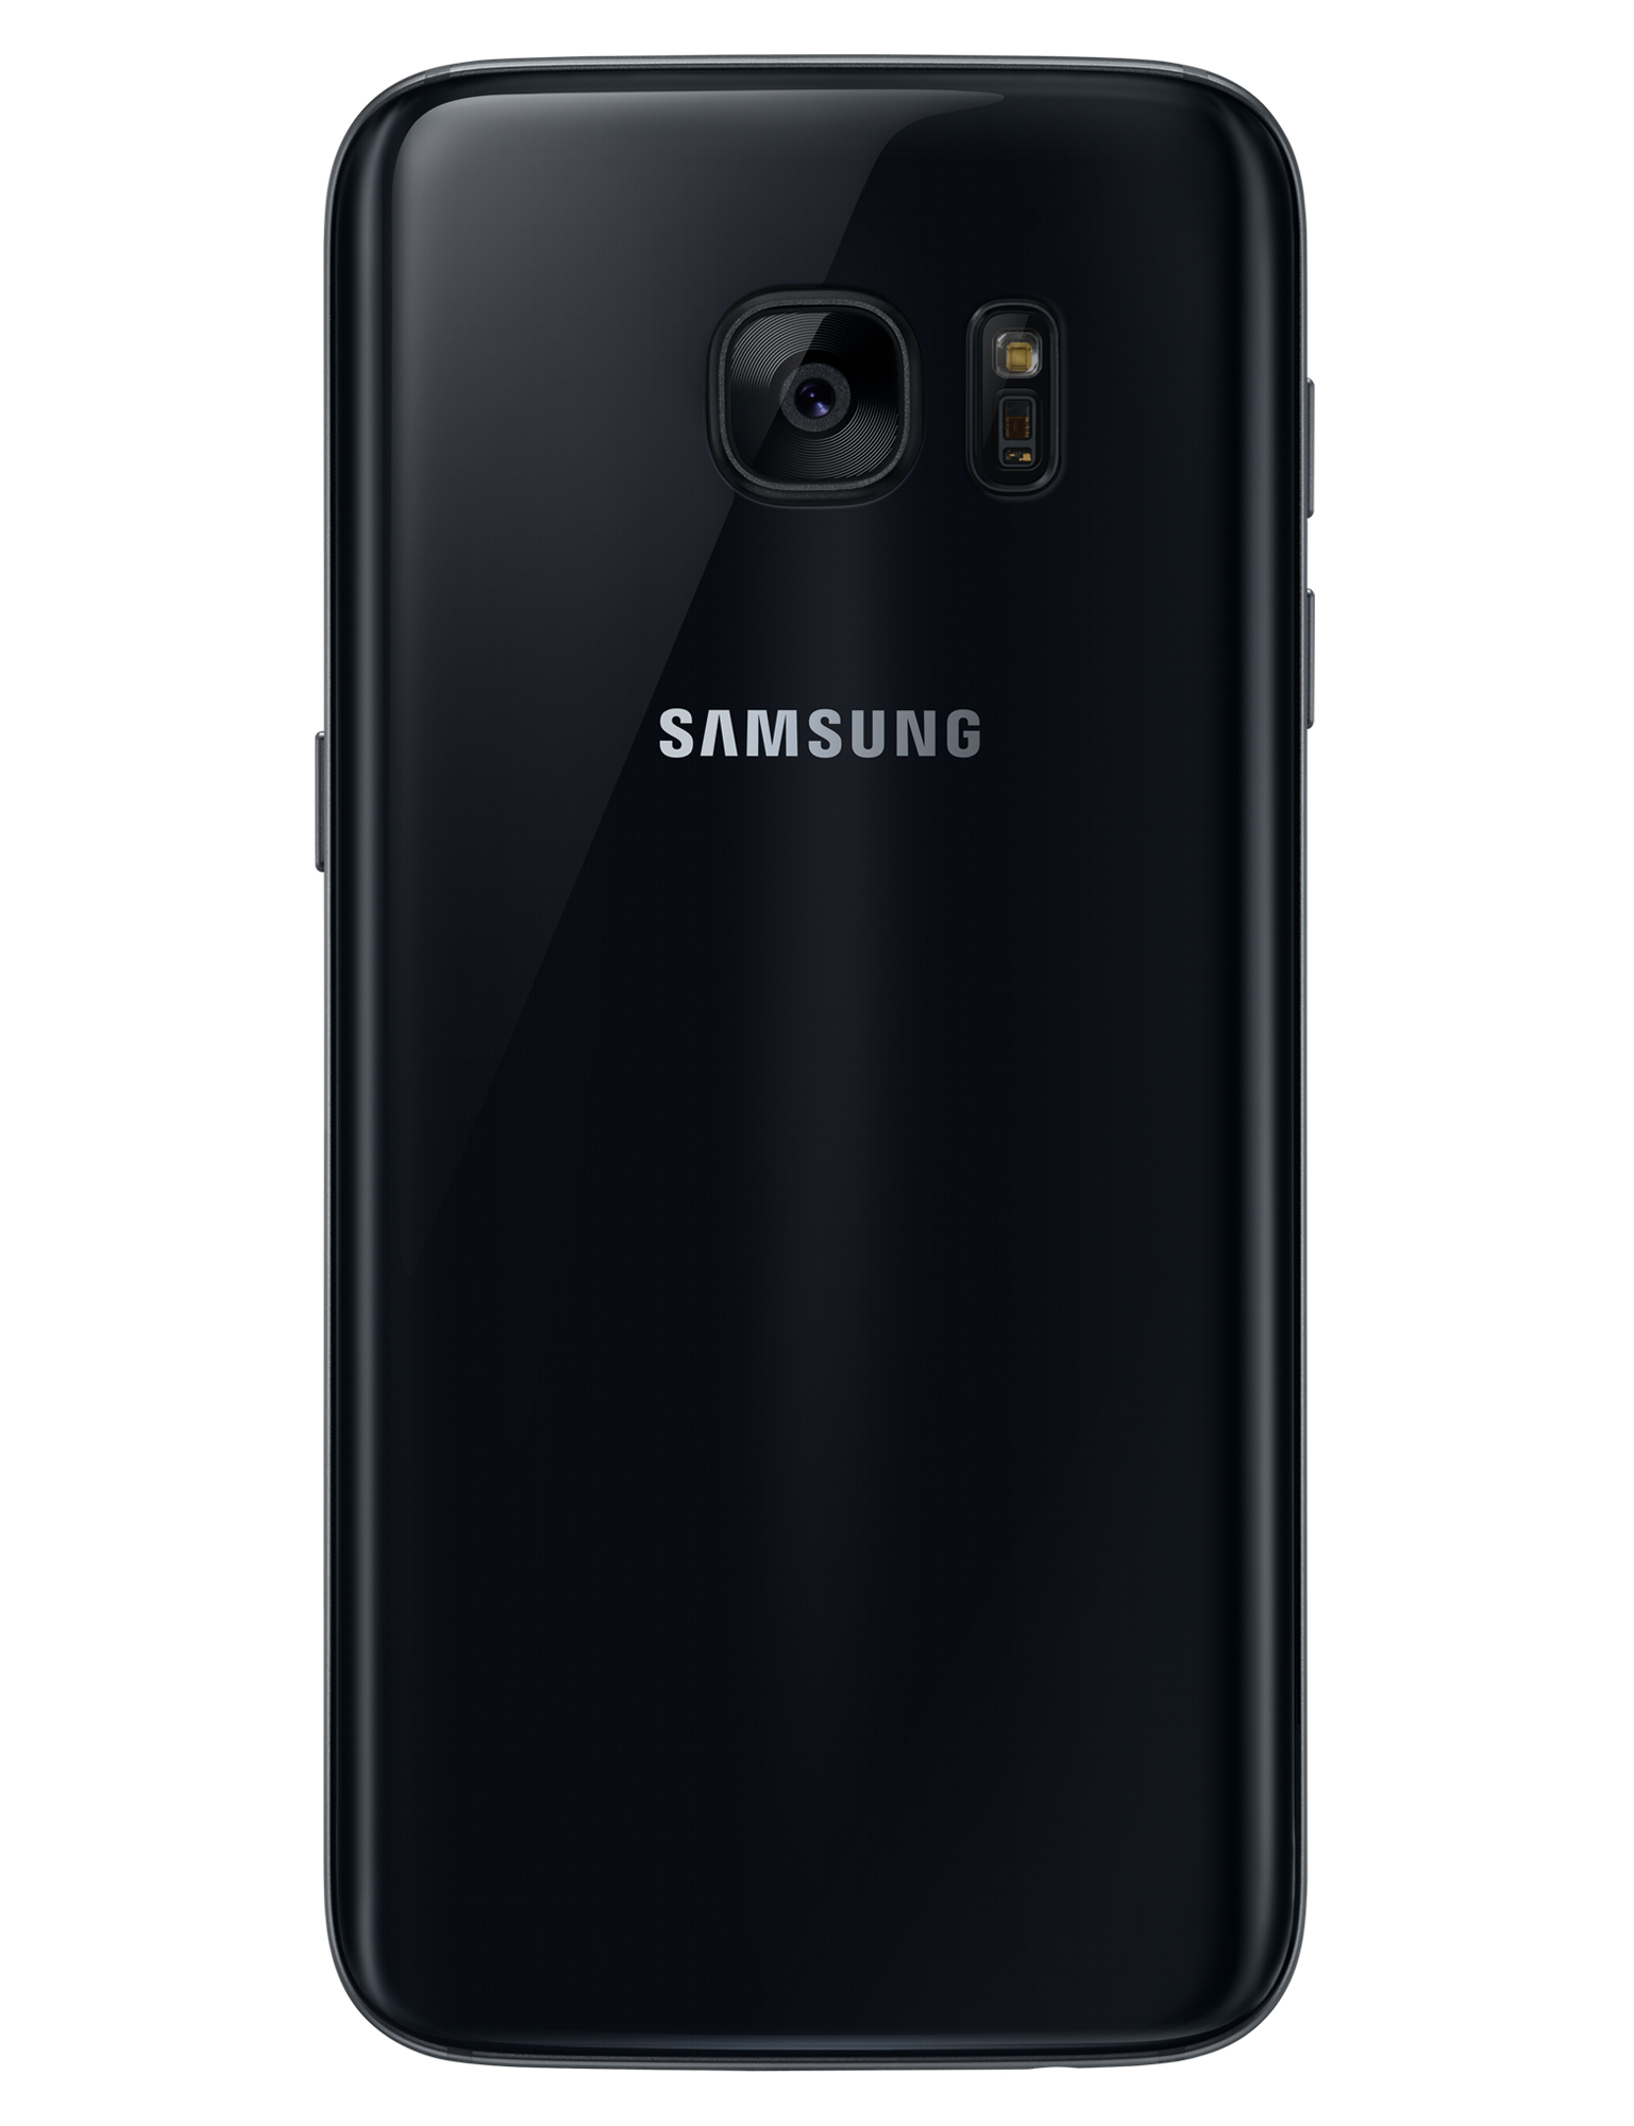 Samsung-Galaxy-S7-4